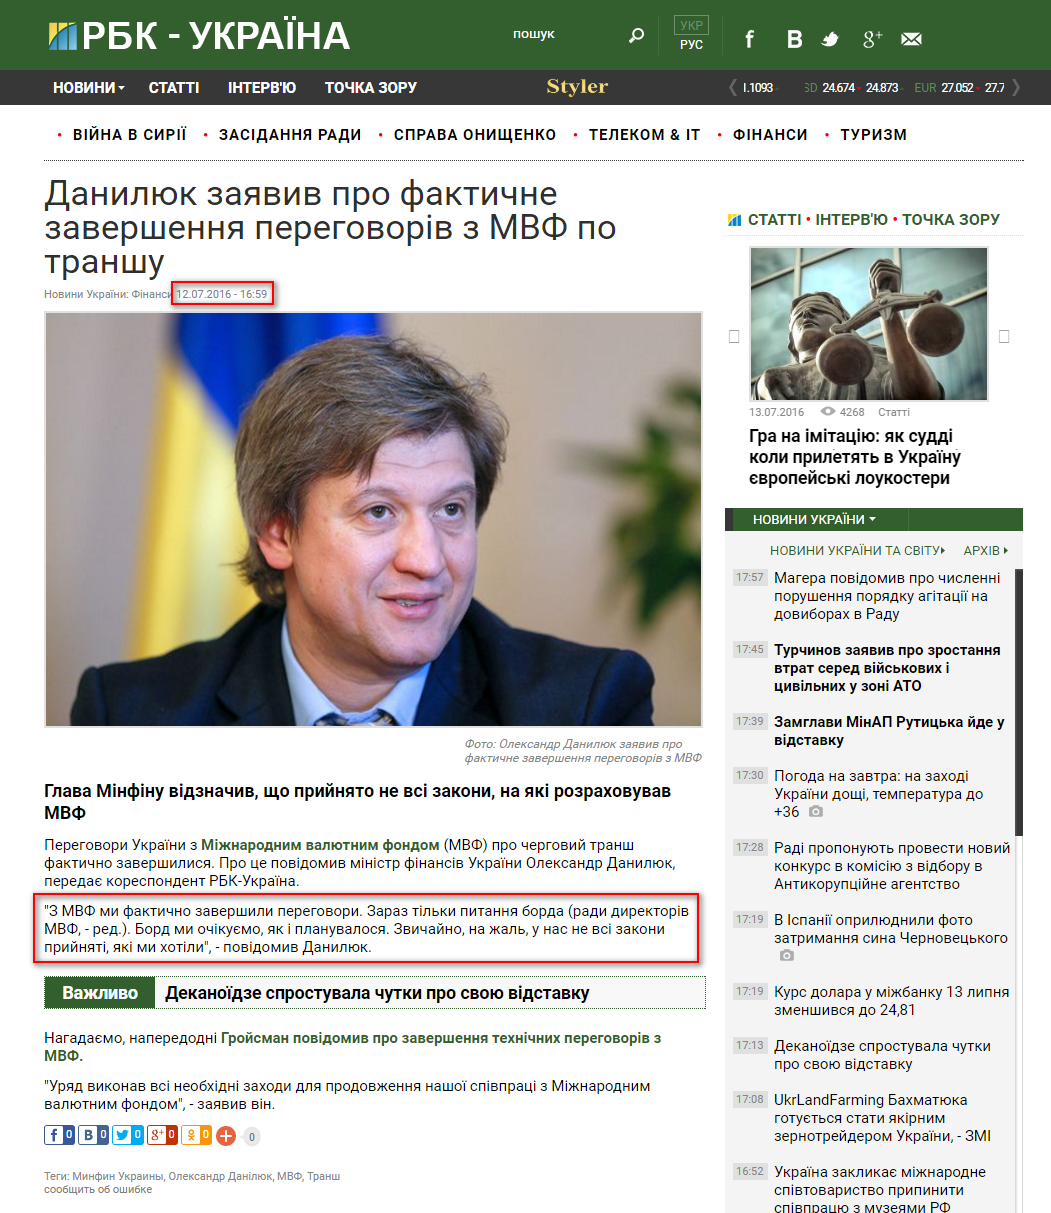 https://www.rbcua.com/ukr/news/danilyuk-zayavil-fakticheskom-zavershenii-1468331789.html